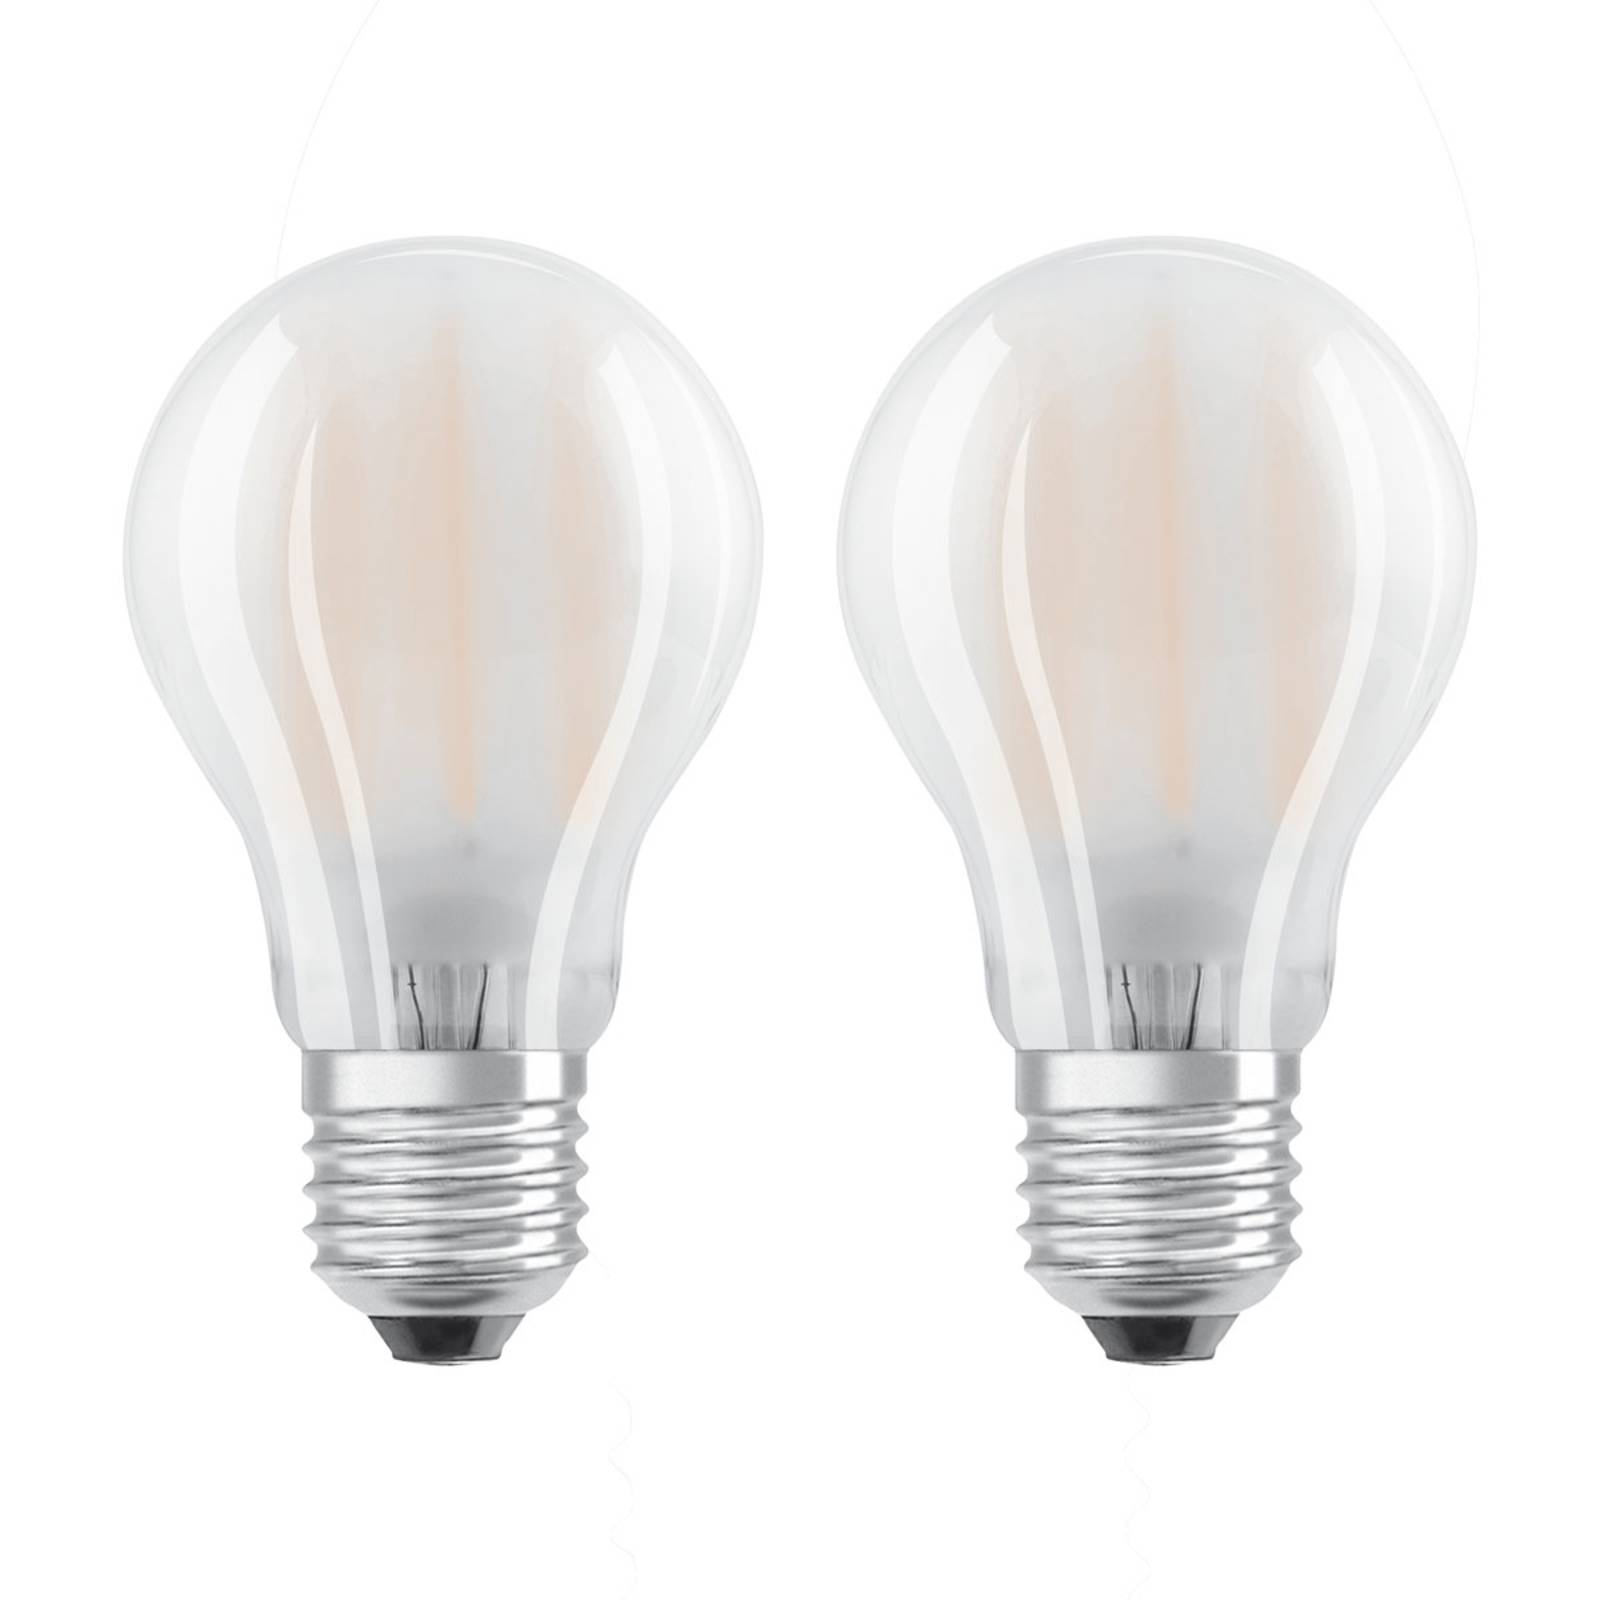 OSRAM LED lámpa E27 6,5W meleg fehér 2 db-os